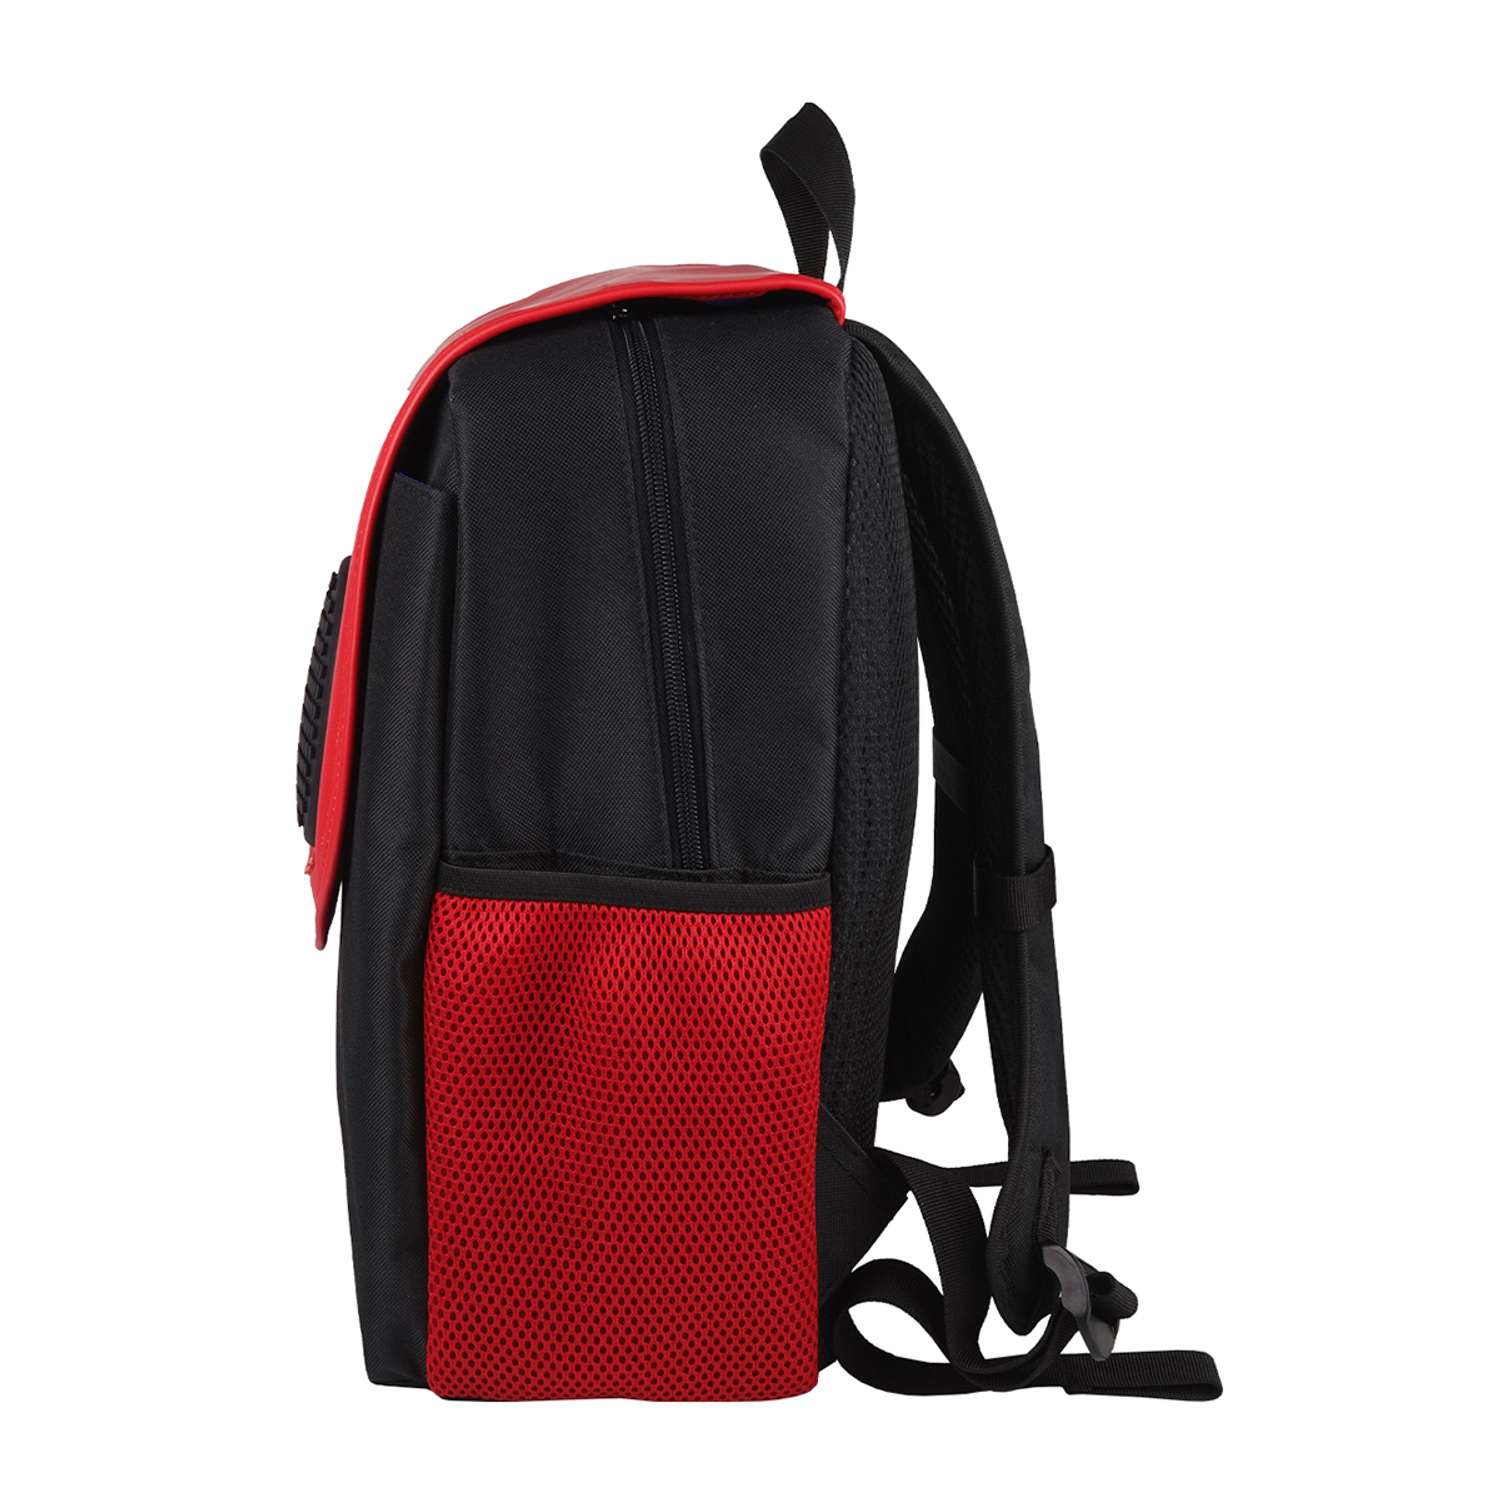 Рюкзак пиксельный Upixel futuristic Kids School Bag чёрно-красный облегченный - фото 6